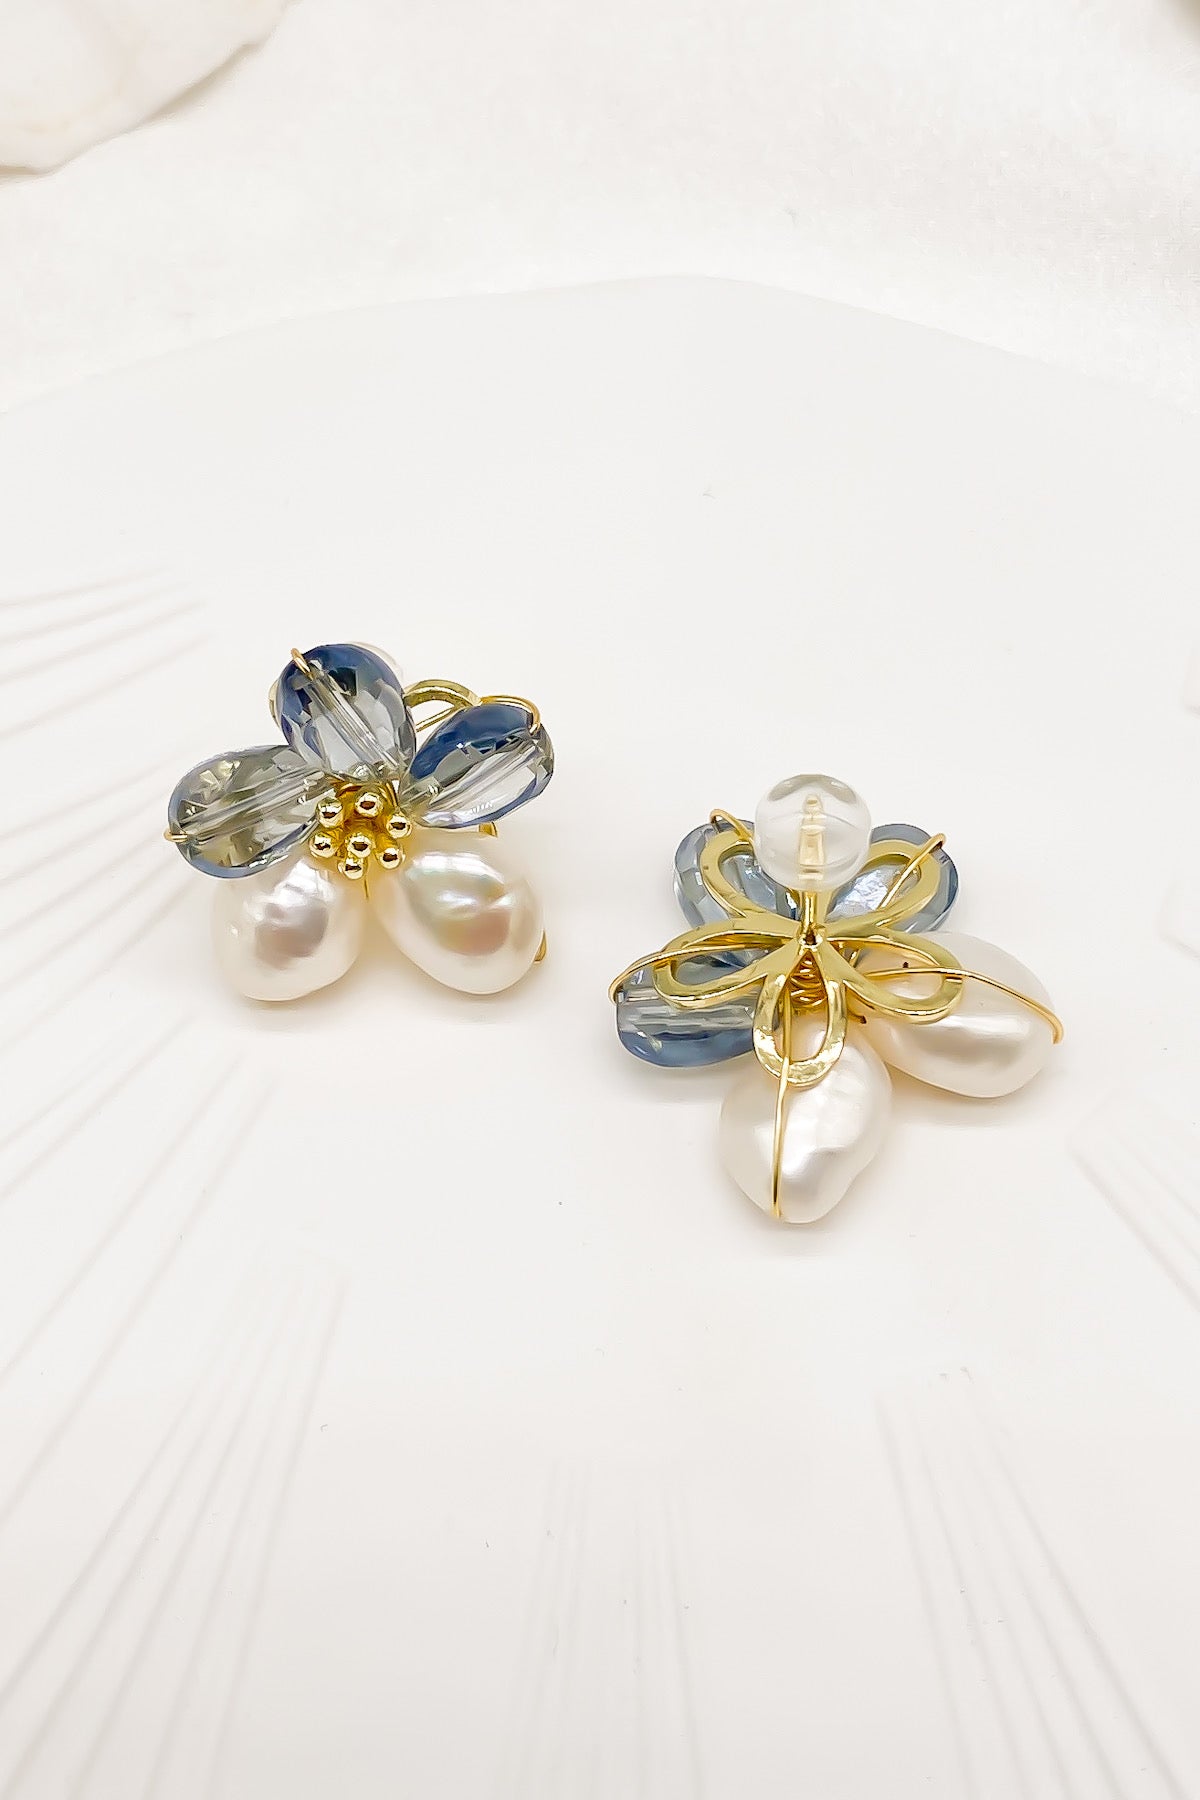 SKYE Shop Chic Modern Elegant Classy Women Jewelry French Parisian Minimalist Kira Cystal Flower Freshwater Pearl Earrings 12